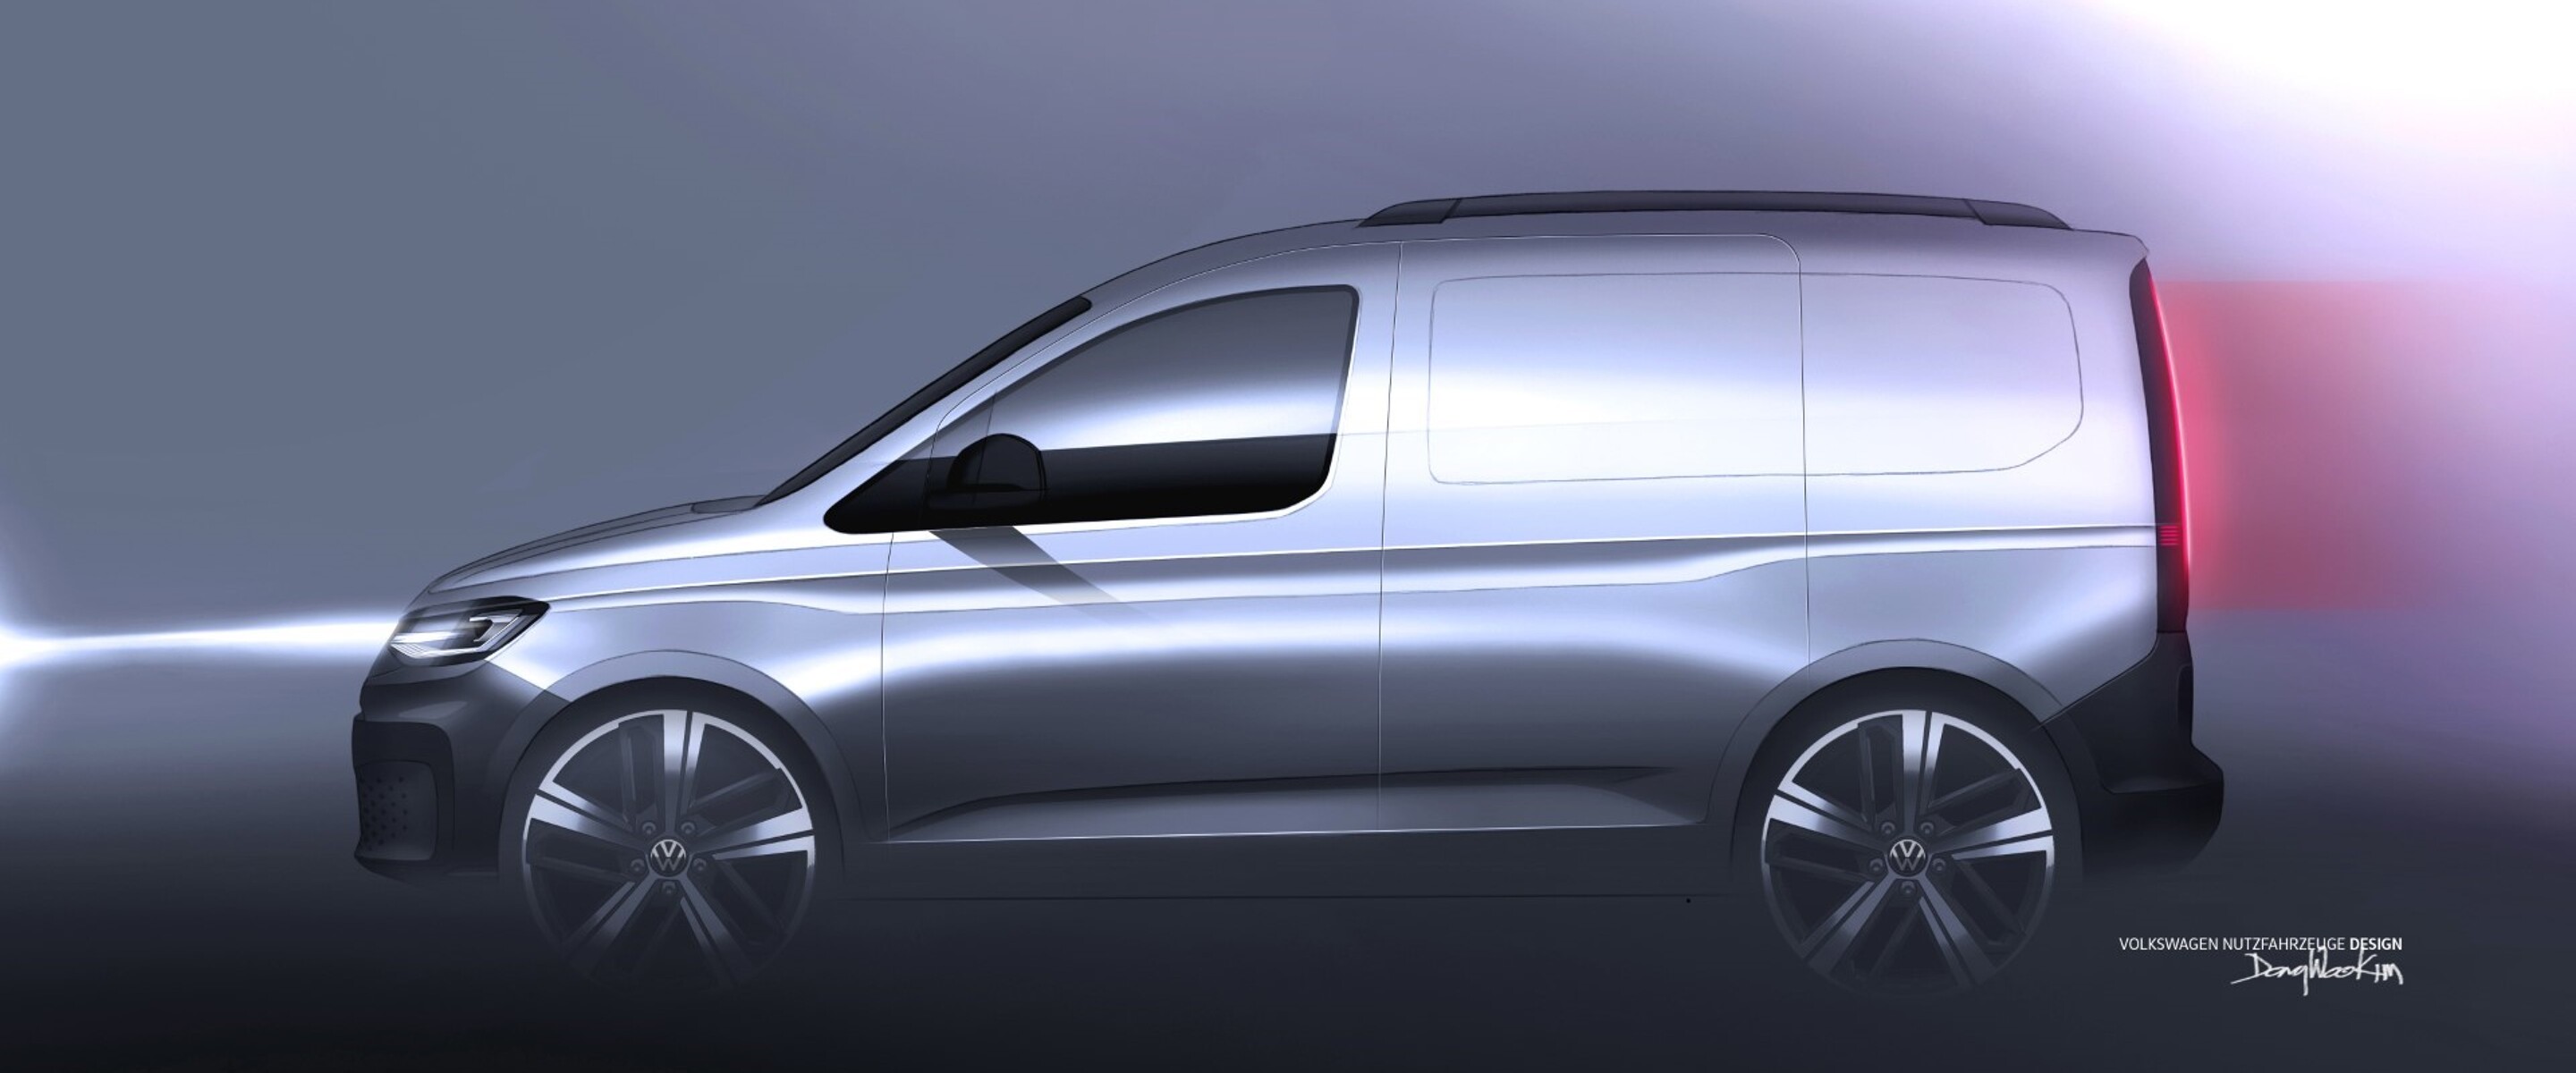 De nieuwe Volkswagen Caddy - lees meer design